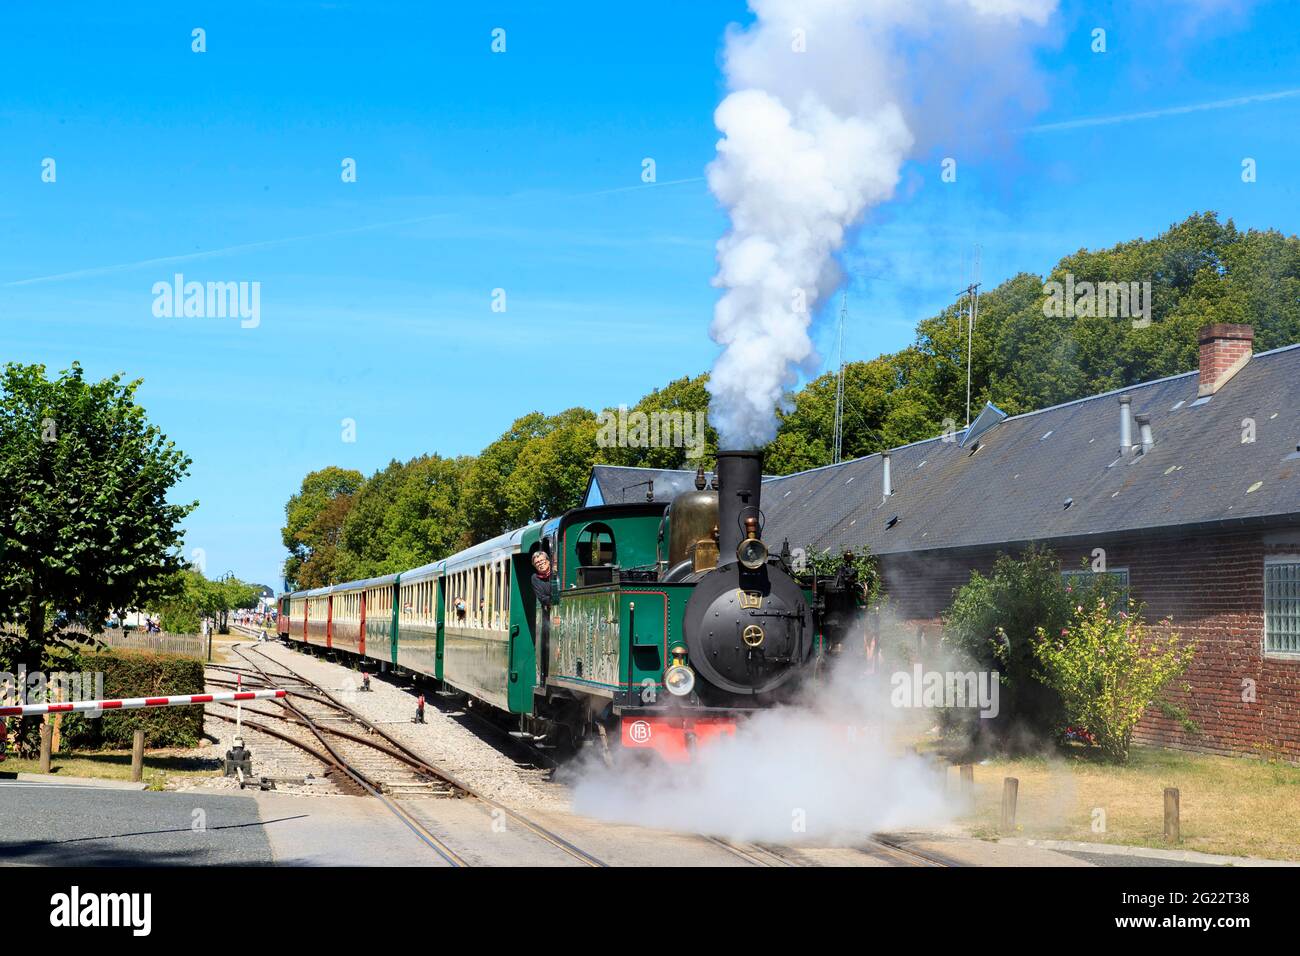 Saint Valery sur Somme (northern France): steam train of the “Chemin de Fer de la Baie de Somme” (Somme Bay Railway) Stock Photo